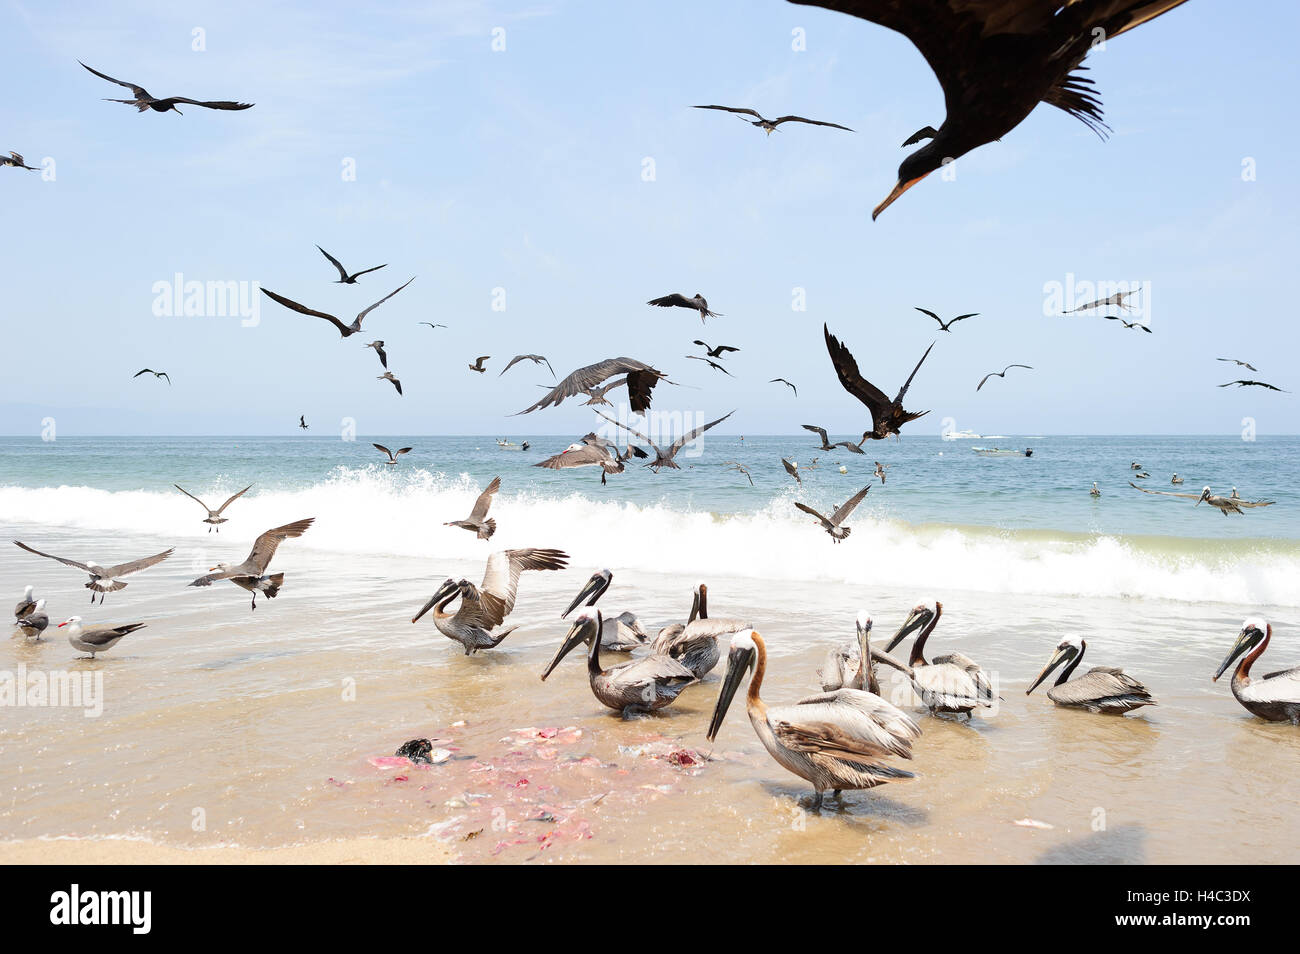 Les oiseaux est un grand troupeau d'oiseaux de voler et d'alimentation sur la plage. Banque D'Images